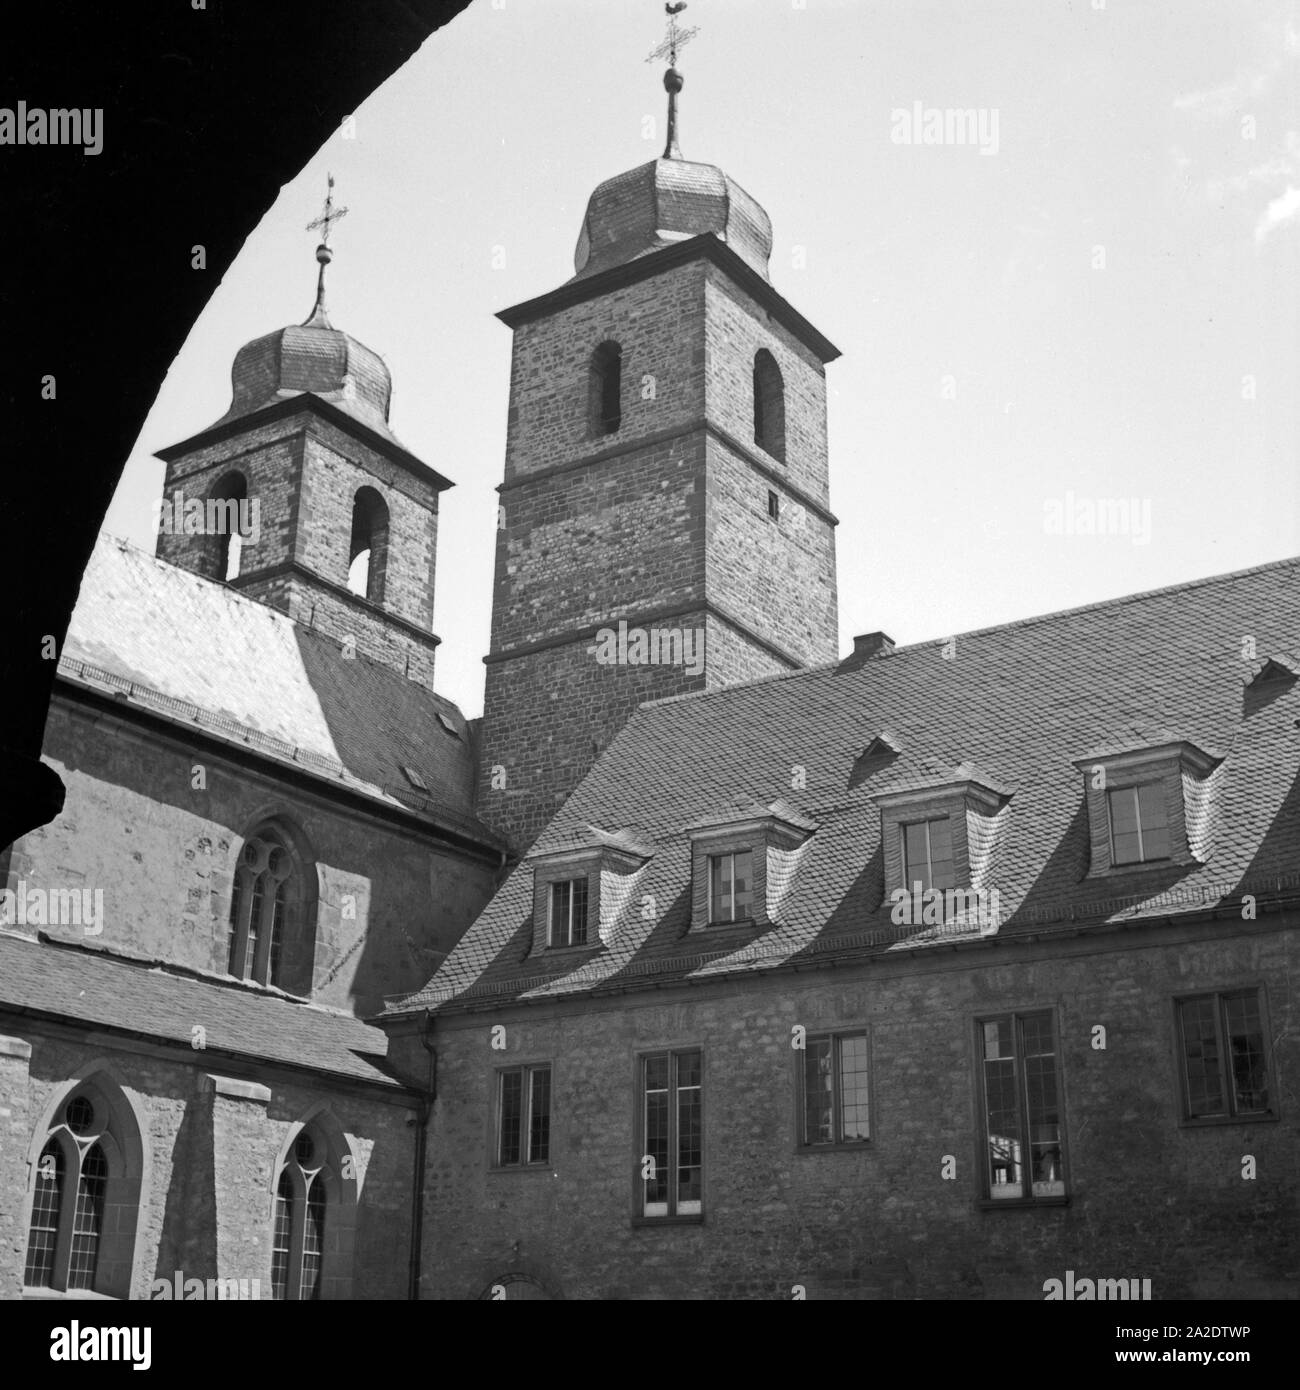 Die Türme der Andreaskirche in Worms, Deutschland 1930er Jahre. I campanili di la chiesa di S. Andrea a Worms, Germania 1930s. Foto Stock